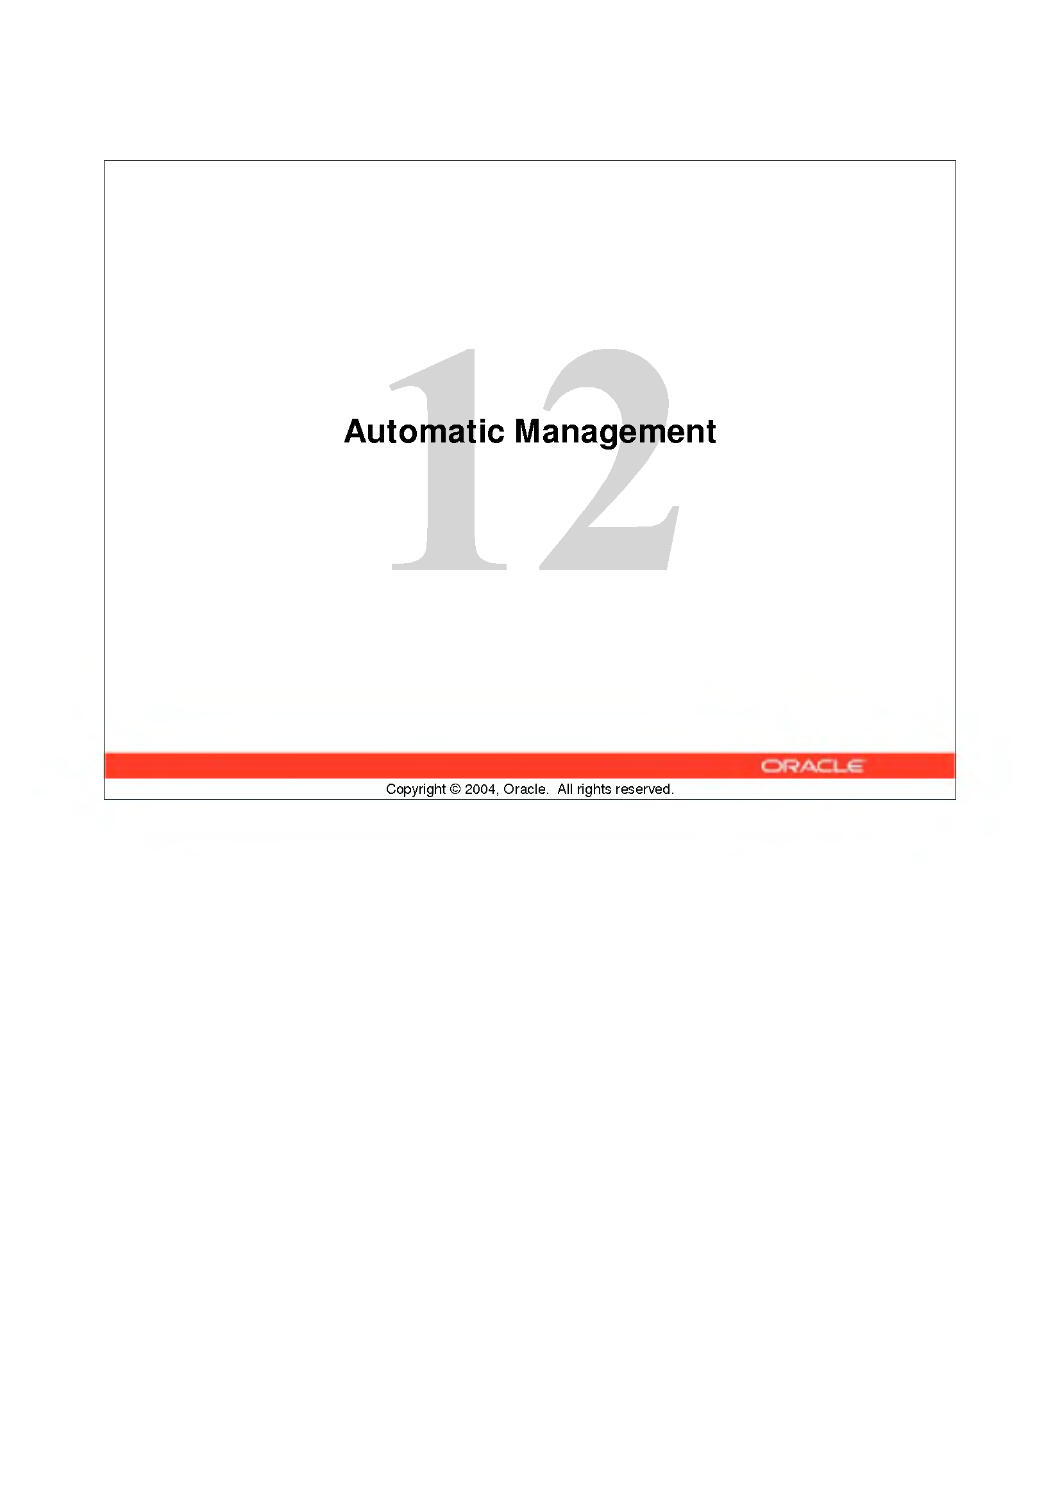 12 Automatic Management